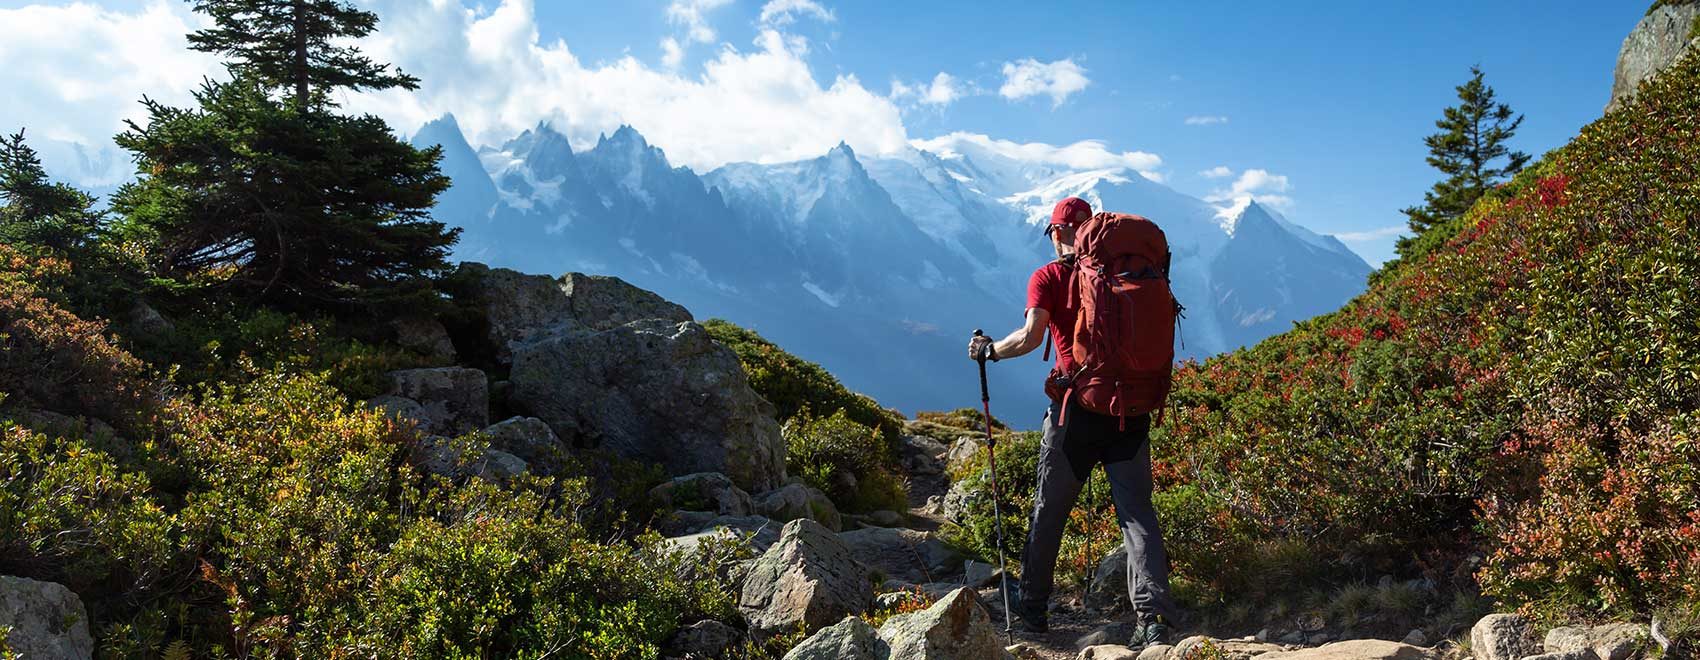 A man hiking on the famous Tour du Mont Blanc